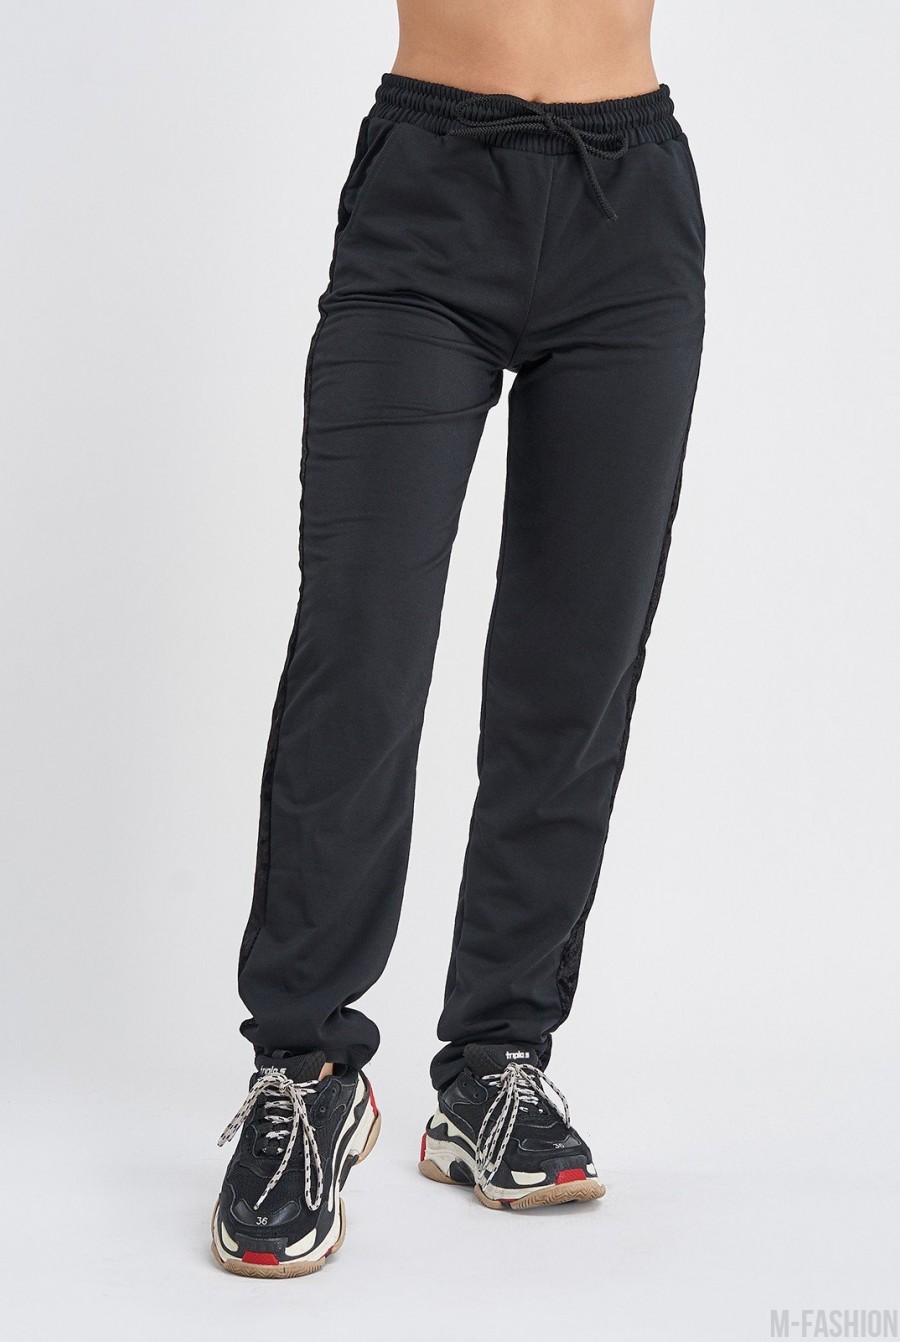 Черные трикотажные штаны с велюровыми лампасами - Фото 1